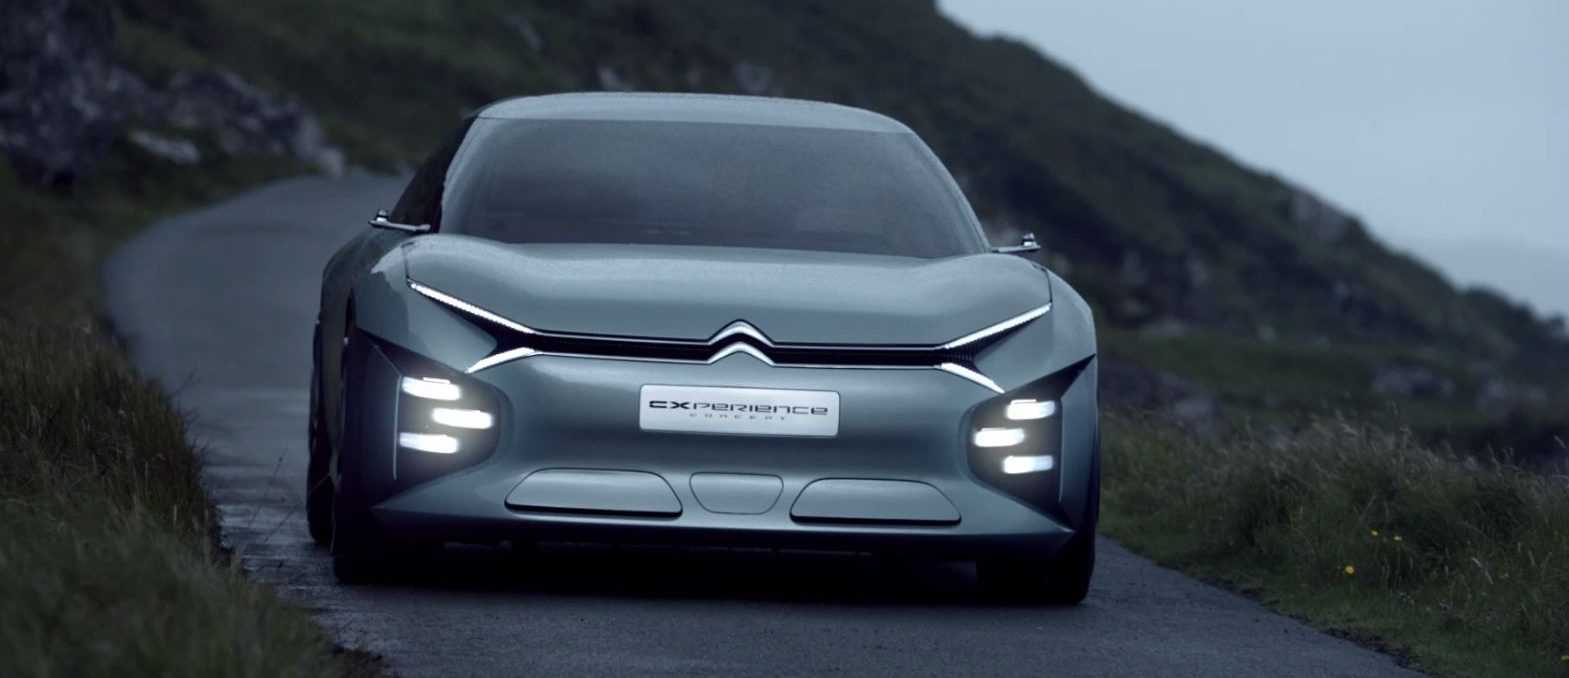 Citroën CXperience Concept 2016